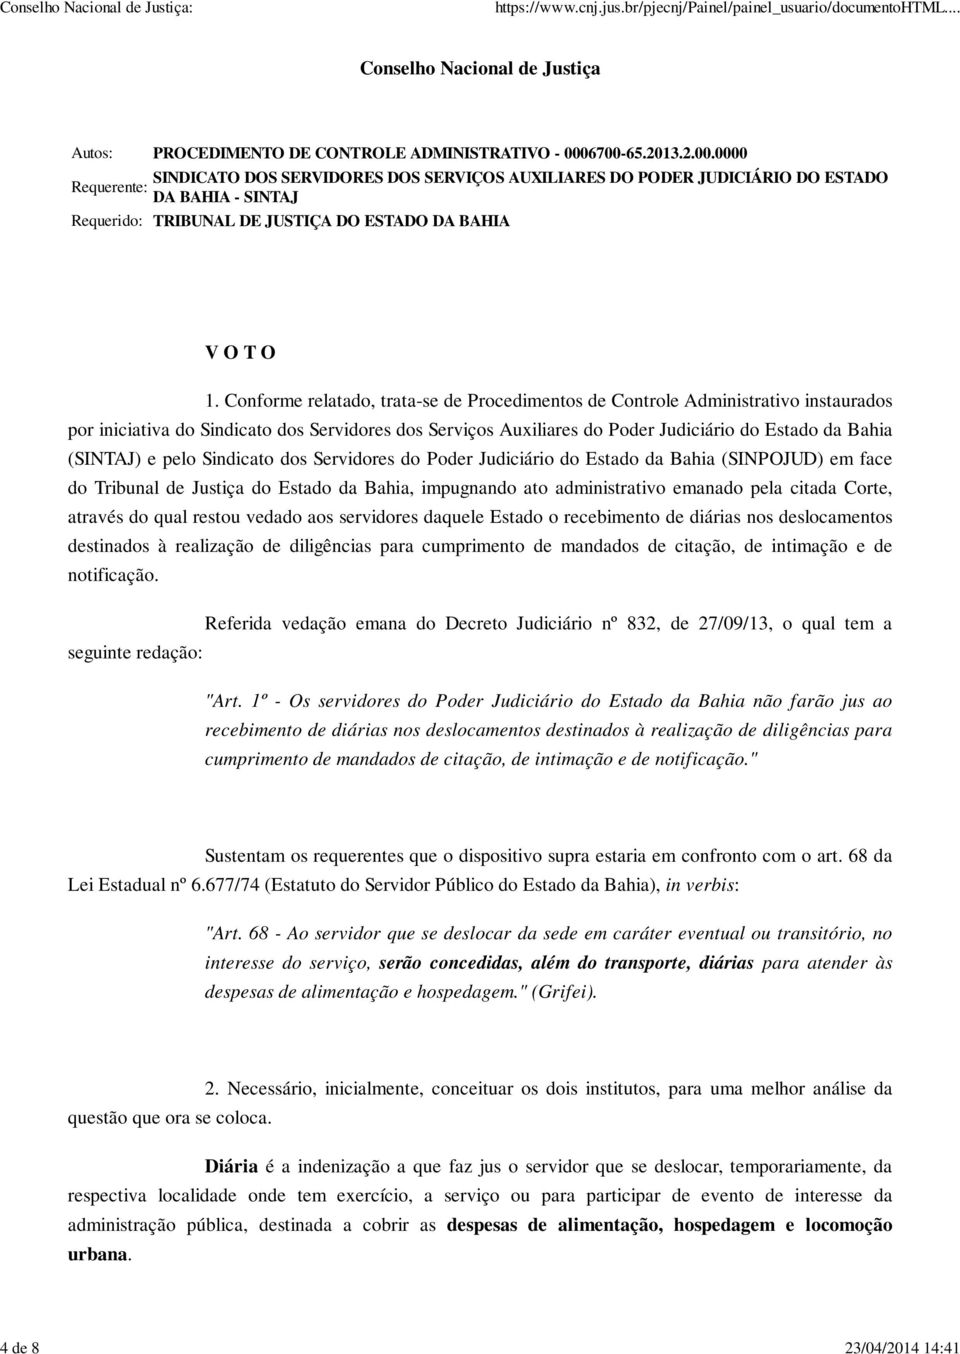 Conforme relatado, trata-se de Procedimentos de Controle Administrativo instaurados por iniciativa do Sindicato dos Servidores dos Serviços Auxiliares do Poder Judiciário do Estado da Bahia (SINTAJ)